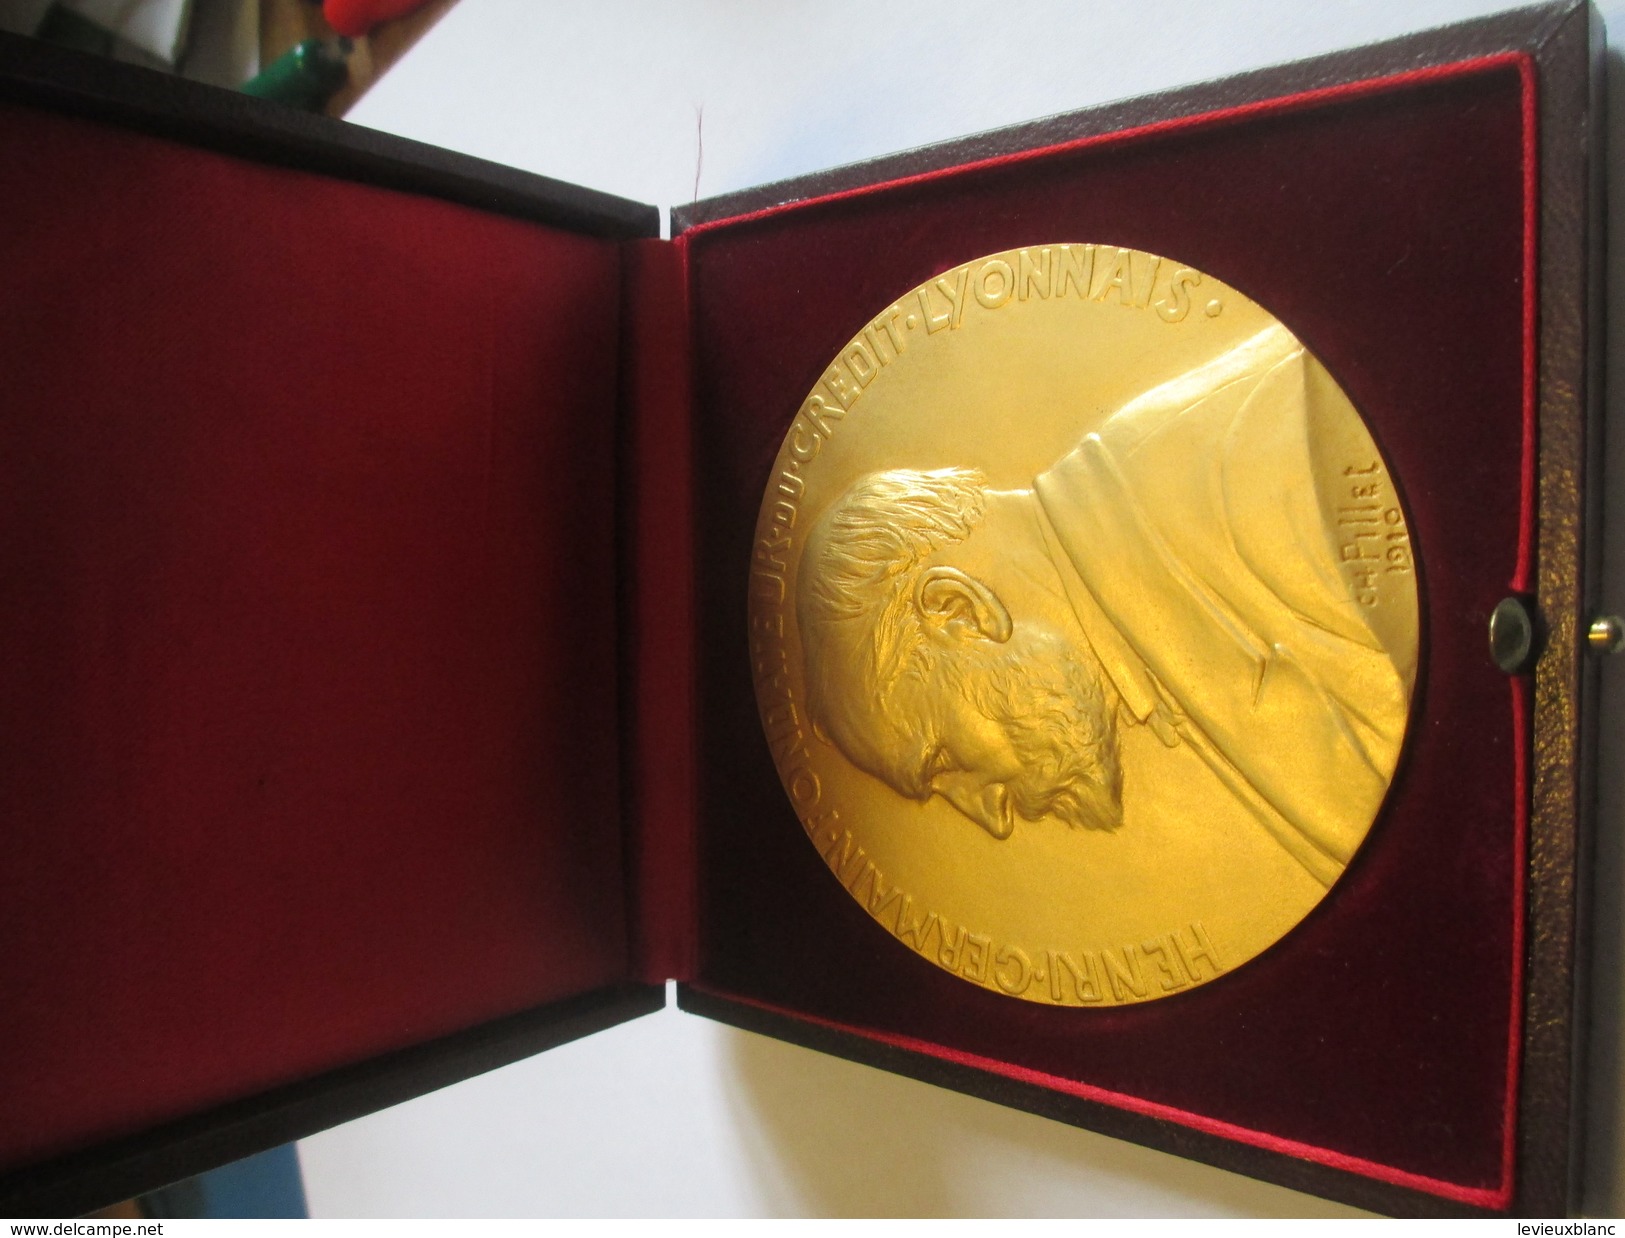 Médaille De Table/ Henri Germain Fondateur  Crédit Lyonnais/25 Années De Service/Pierre Dirson/Pillet/ Vers1970   MED149 - Frankrijk